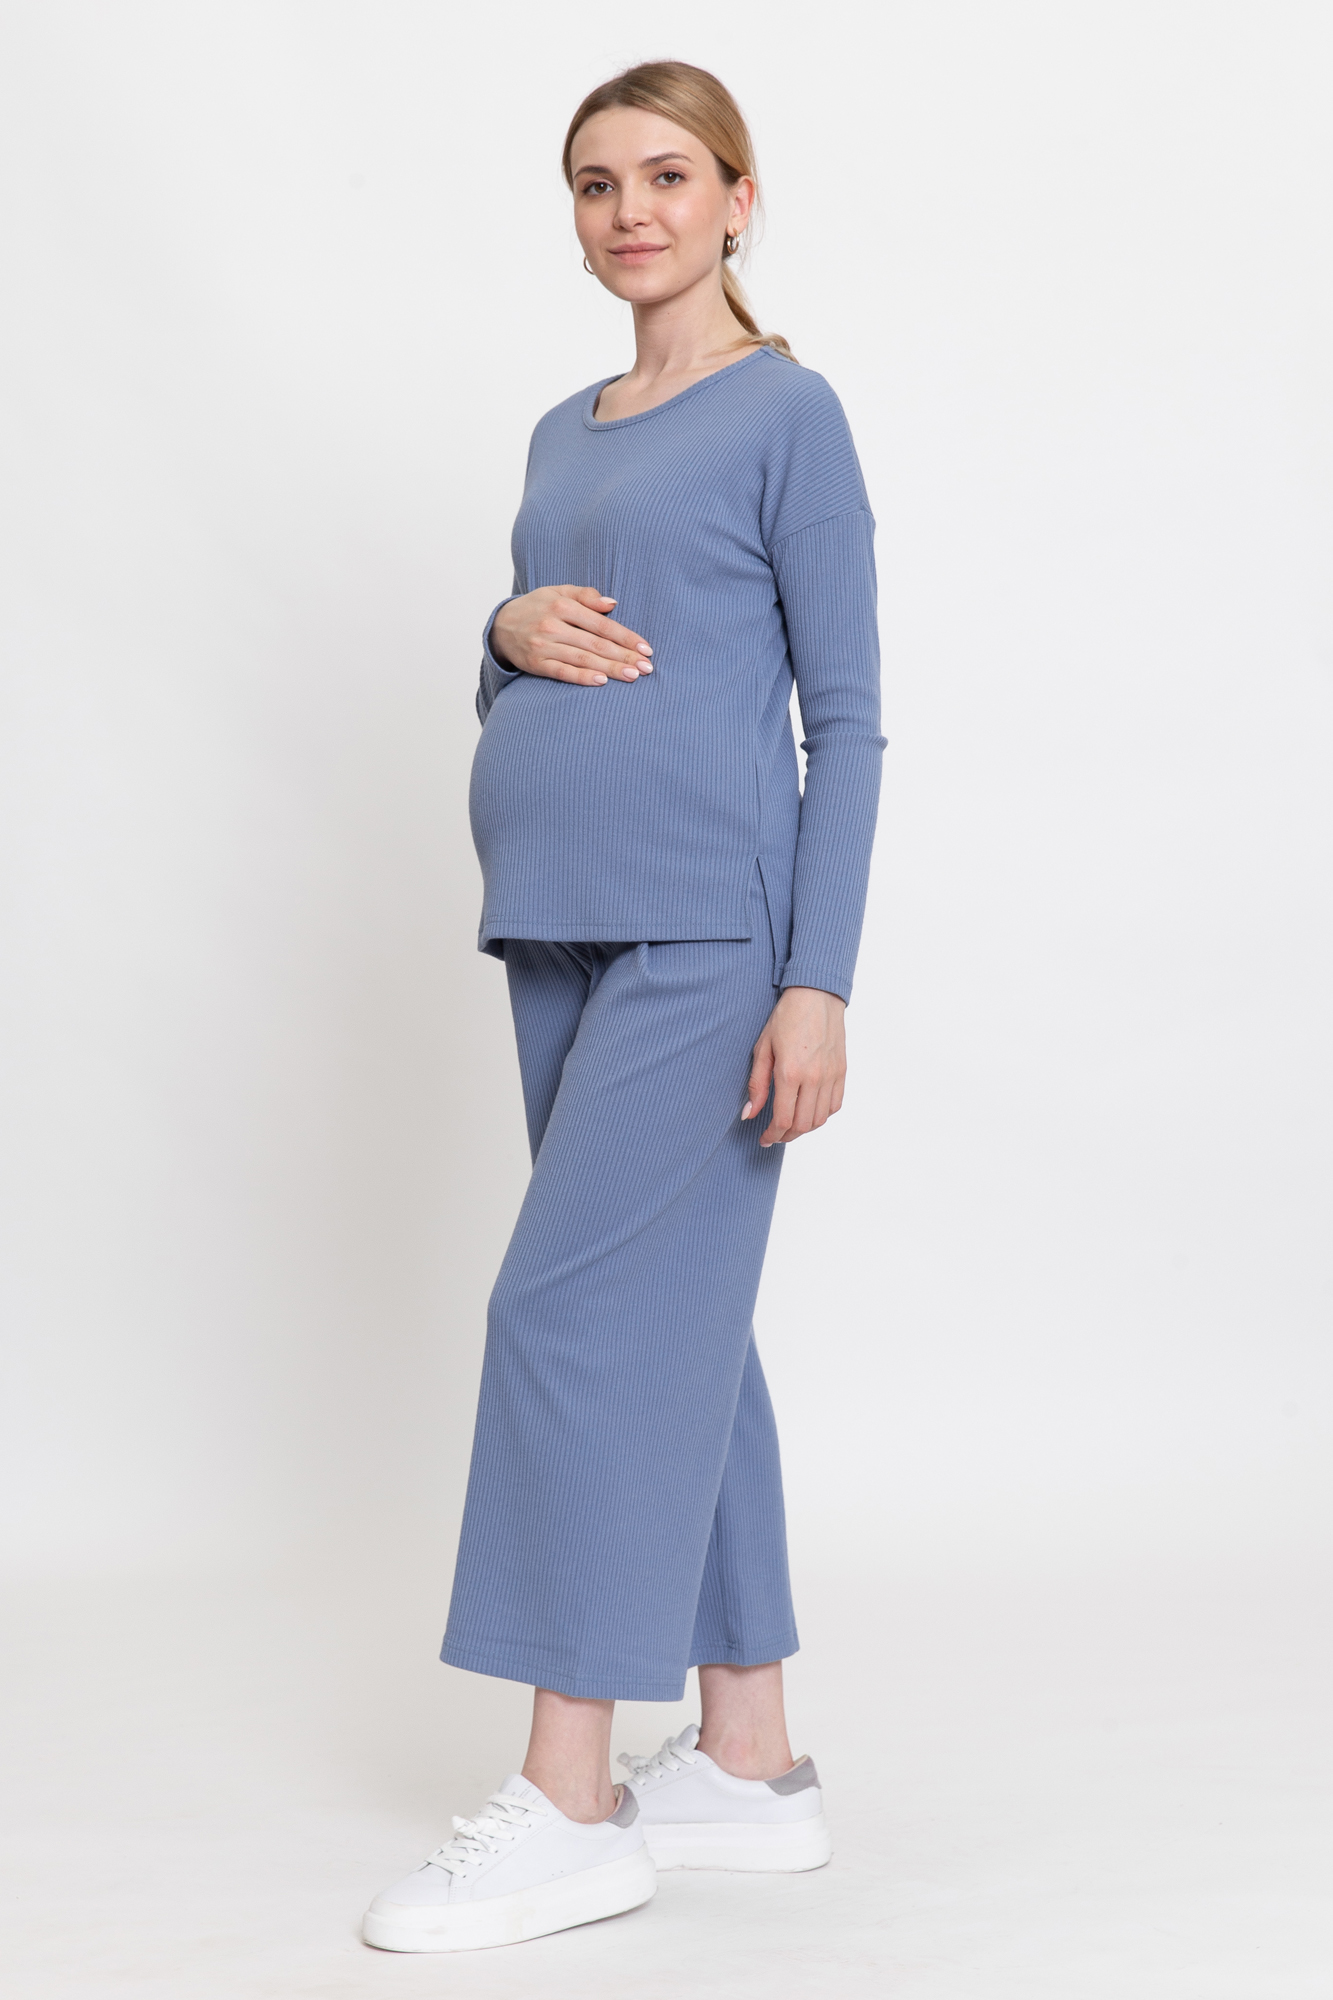 Костюм для беременных женский Magica bellezza 0184а голубой 44 RU